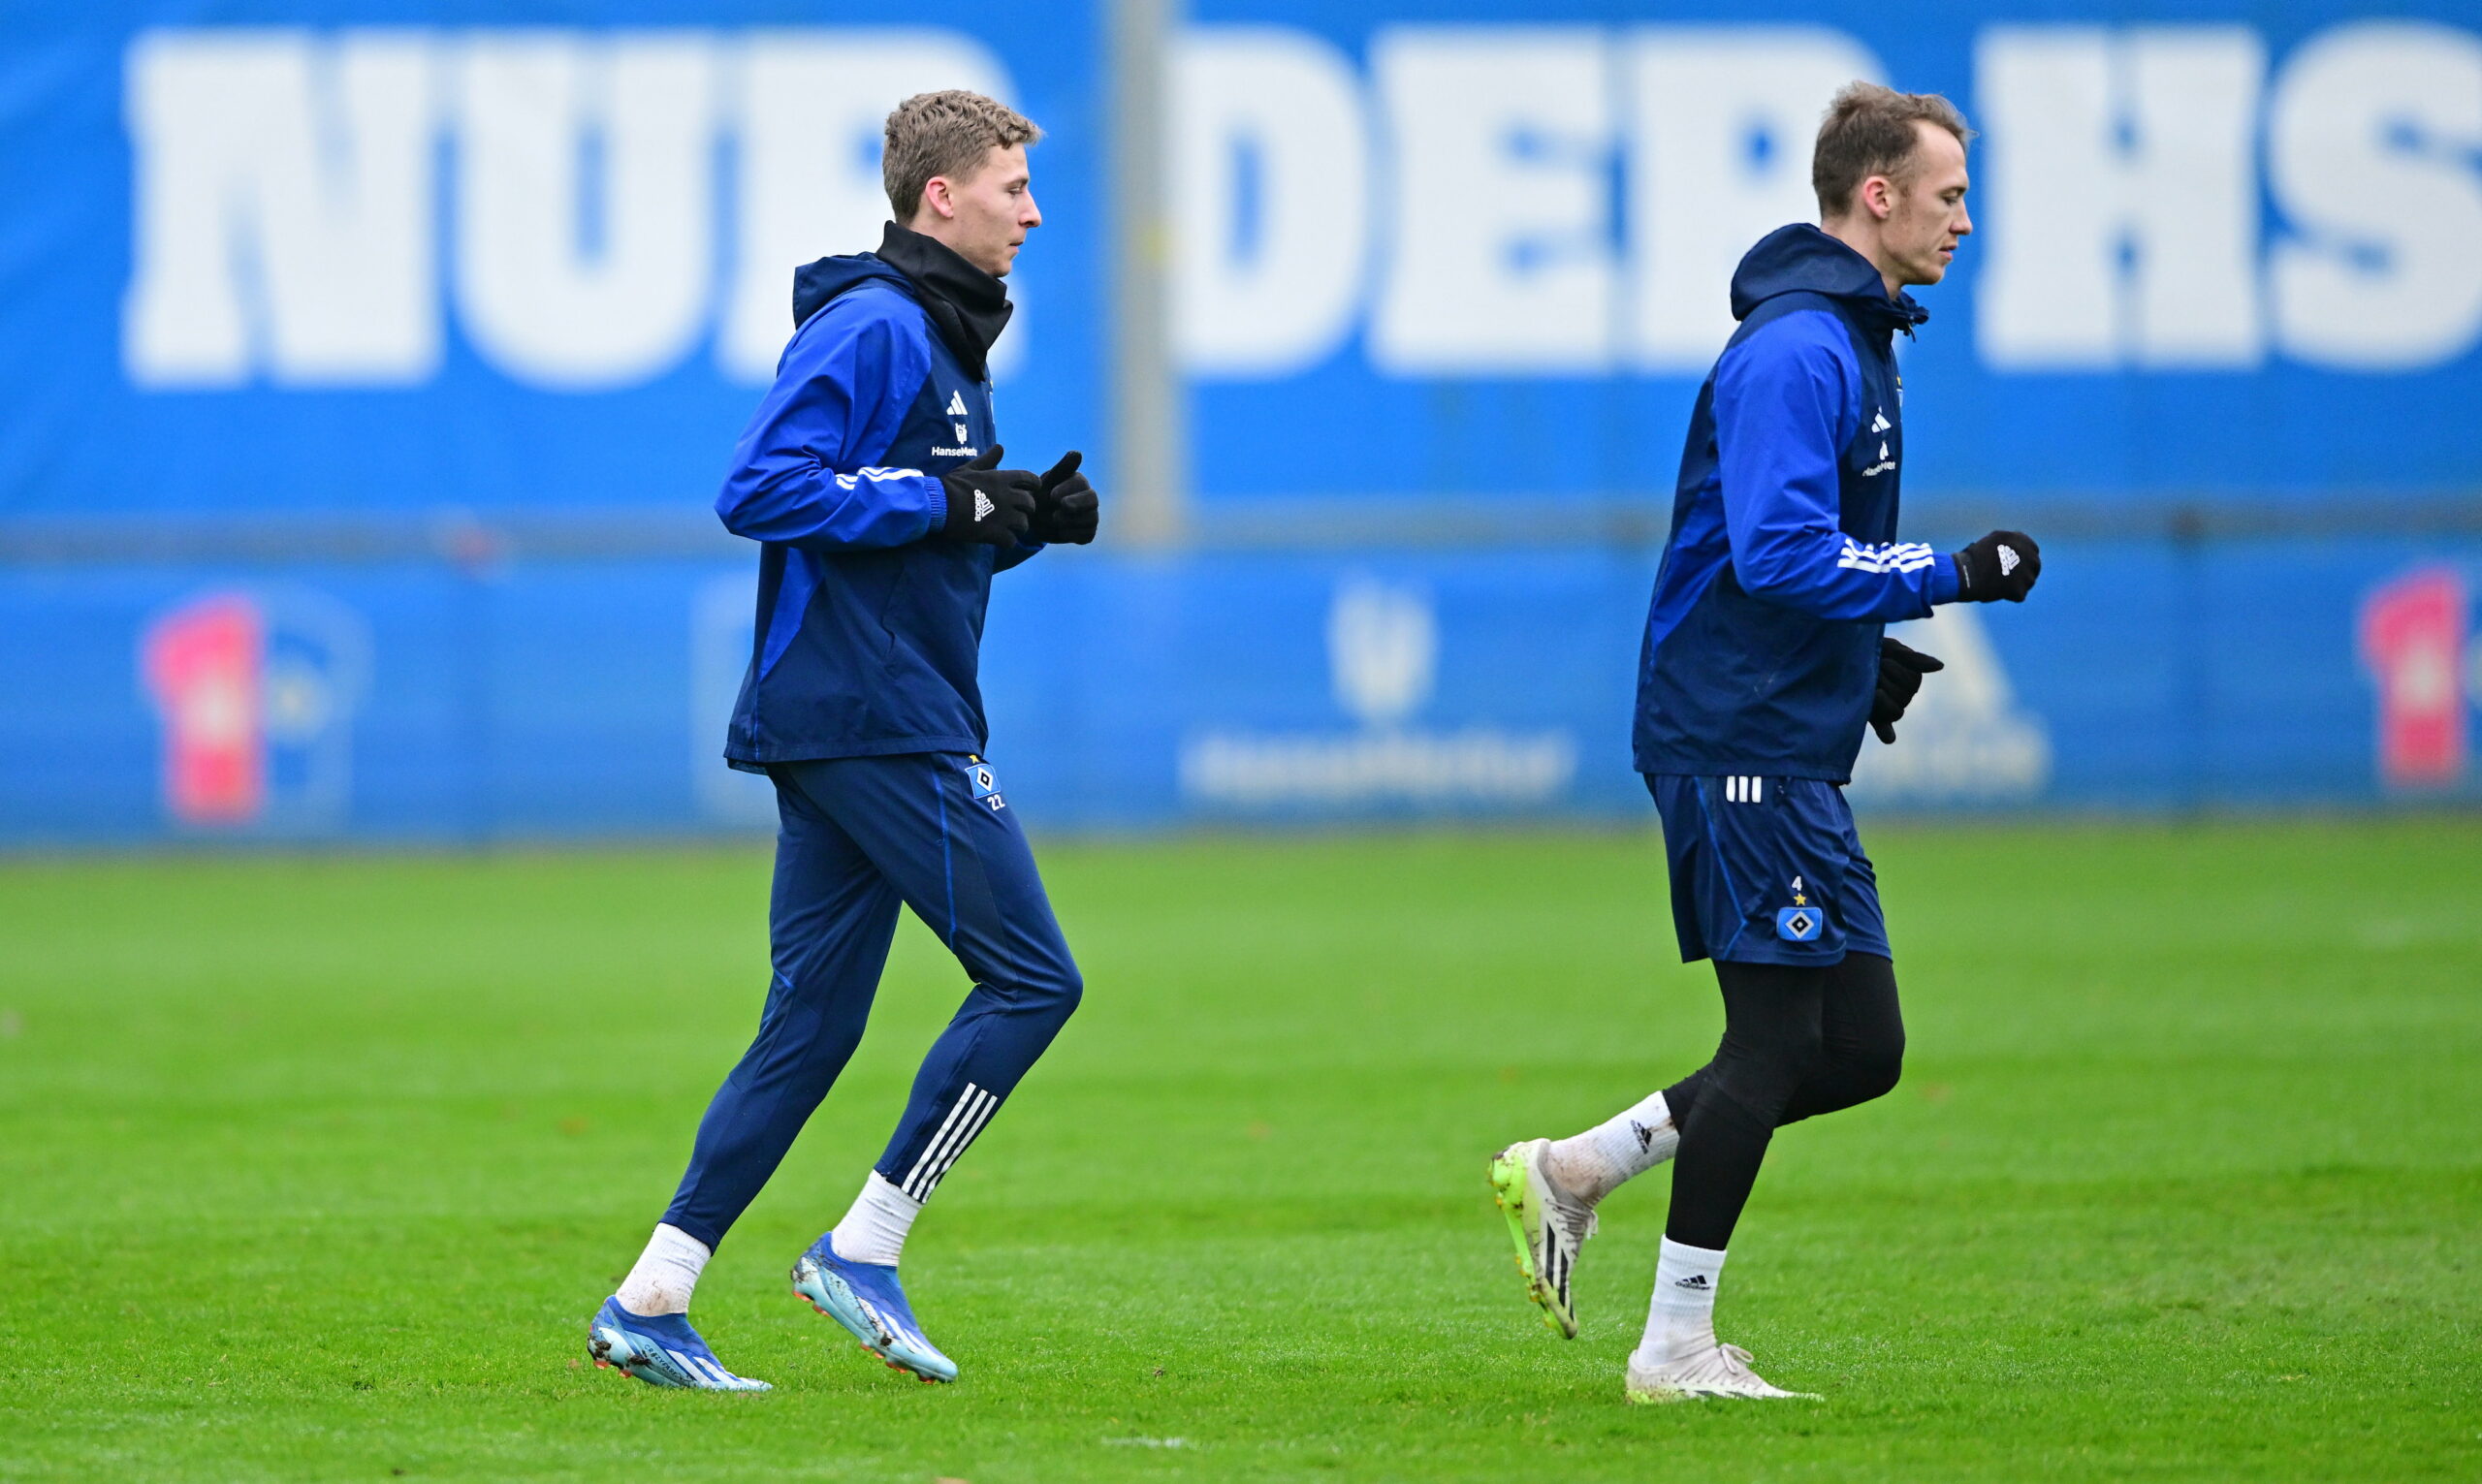 Wieder dabei: Ignace Van der Brempt (l.) und Sebastian Schonlau kehrten am Mittwoch ins HSV-Training zurück.